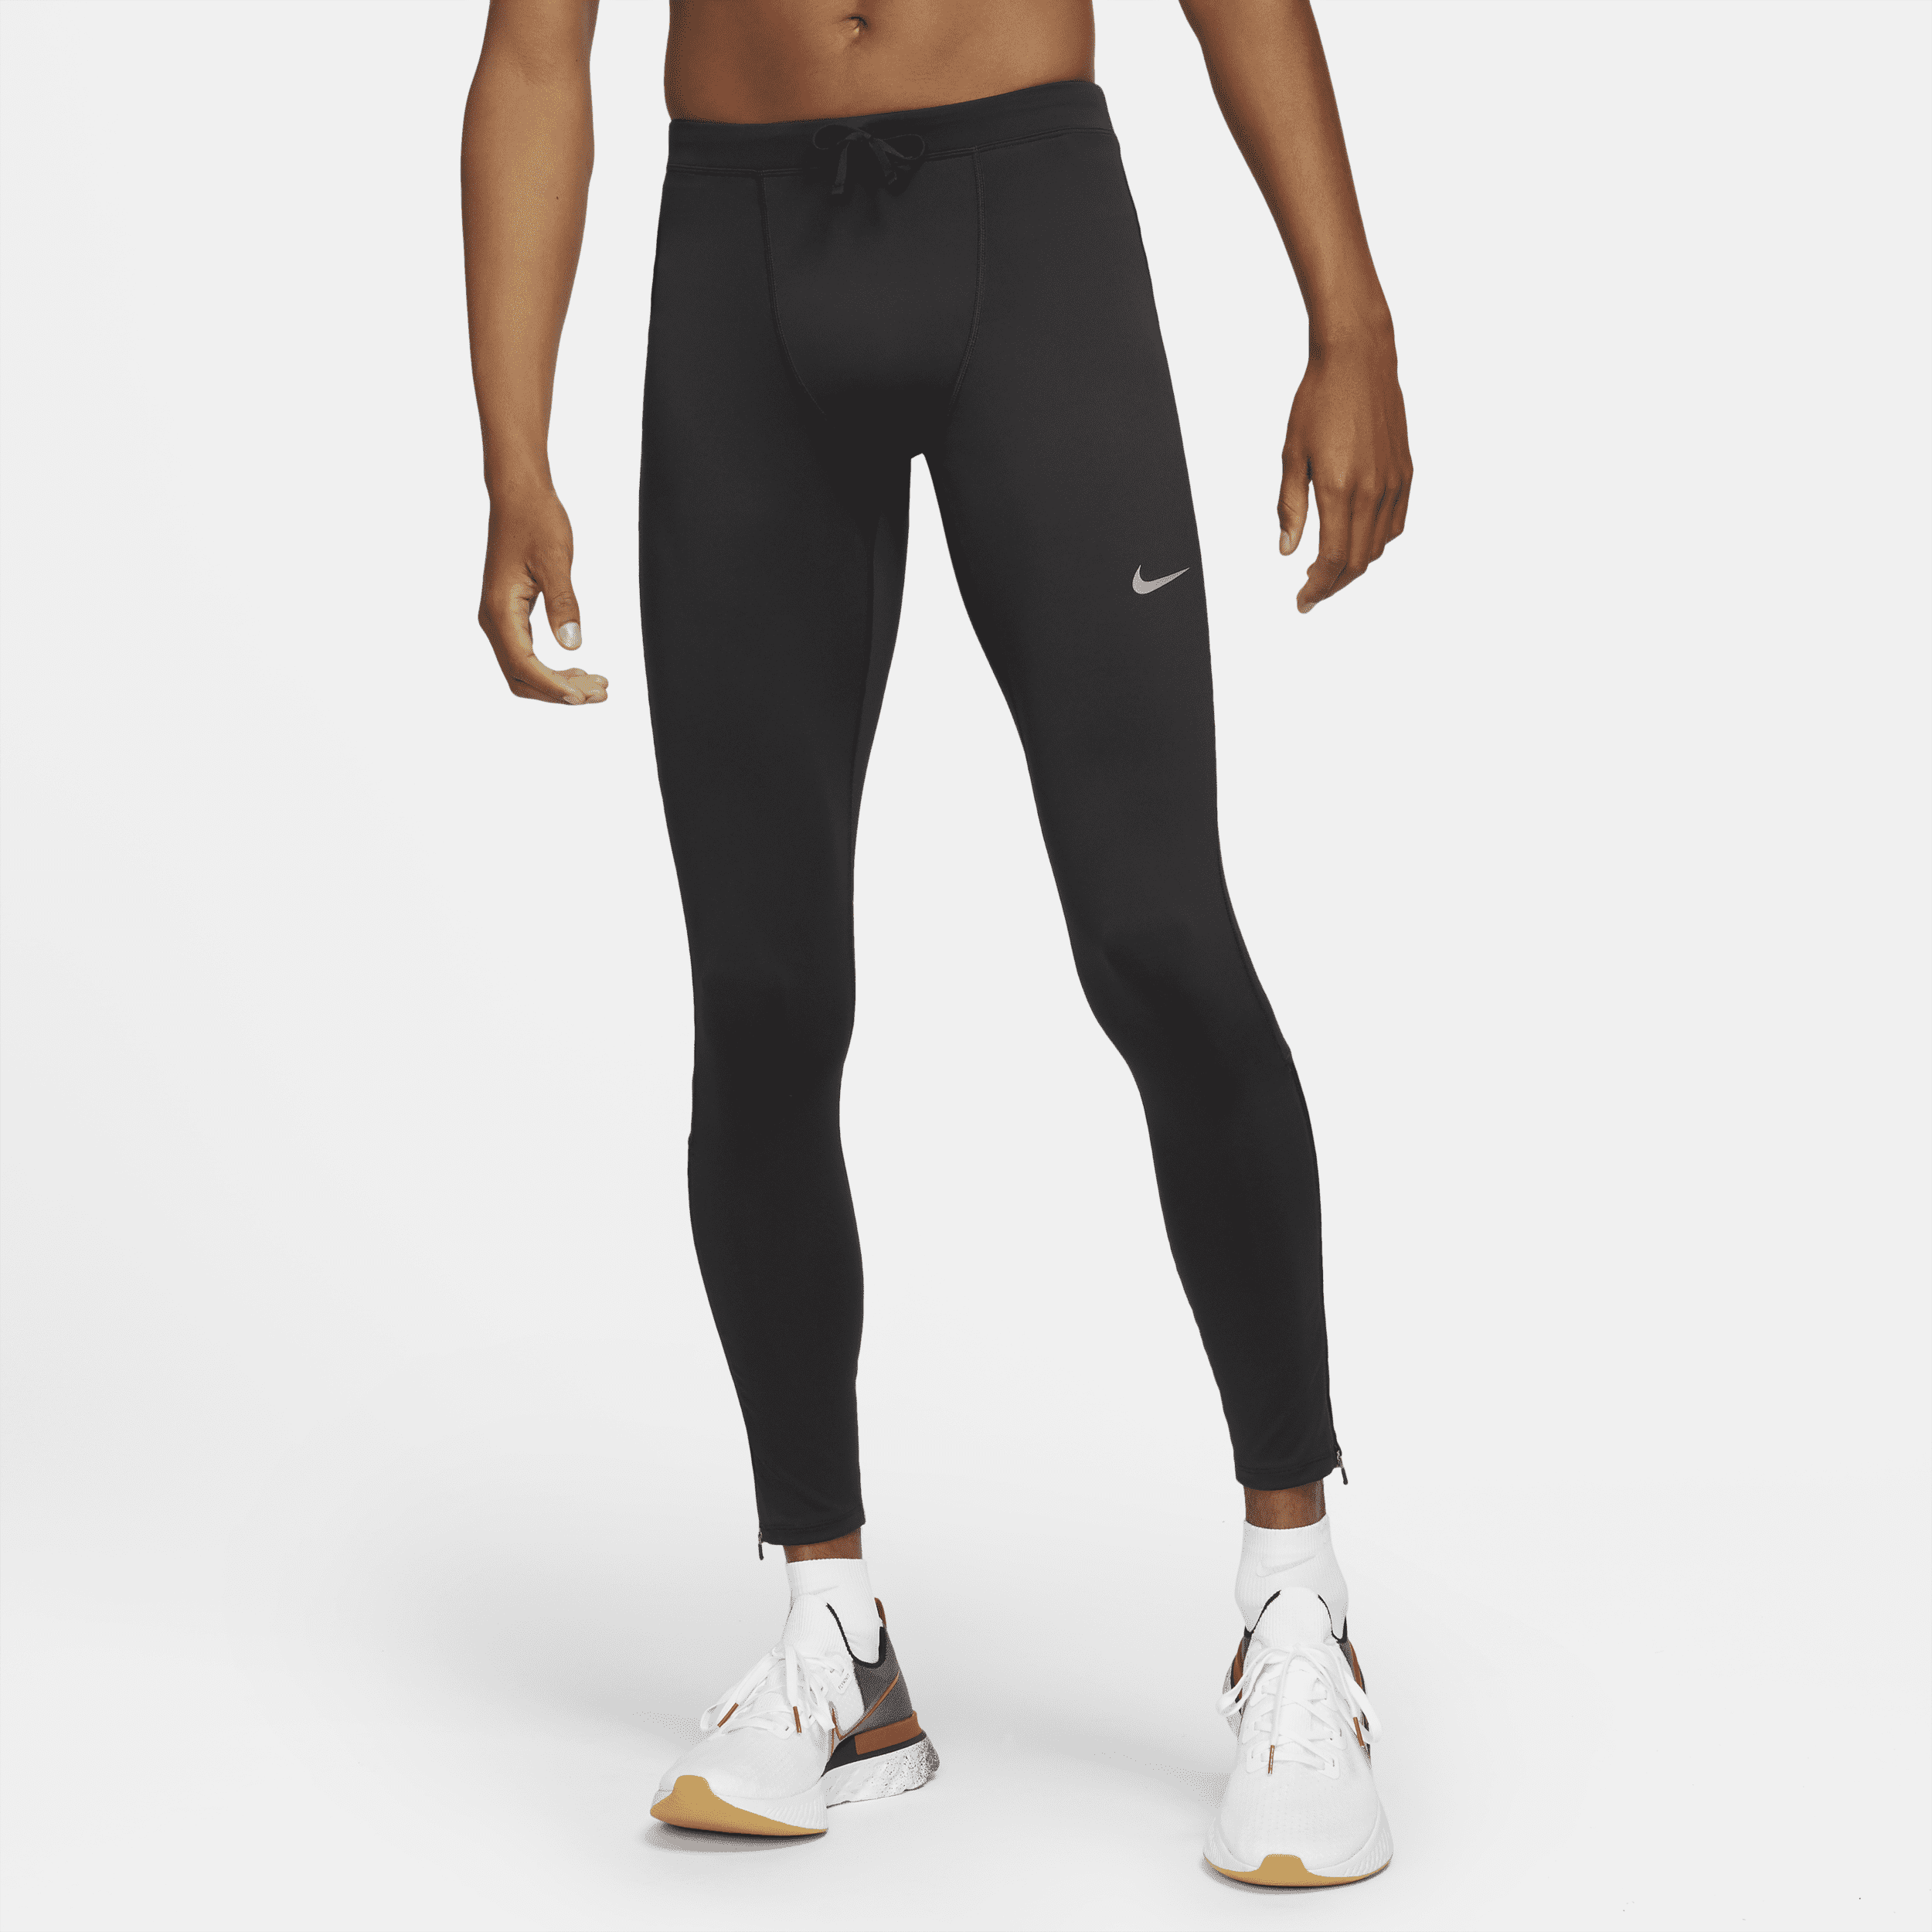 Nike Challenger Dri-FIT hardlooptights voor heren - Zwart